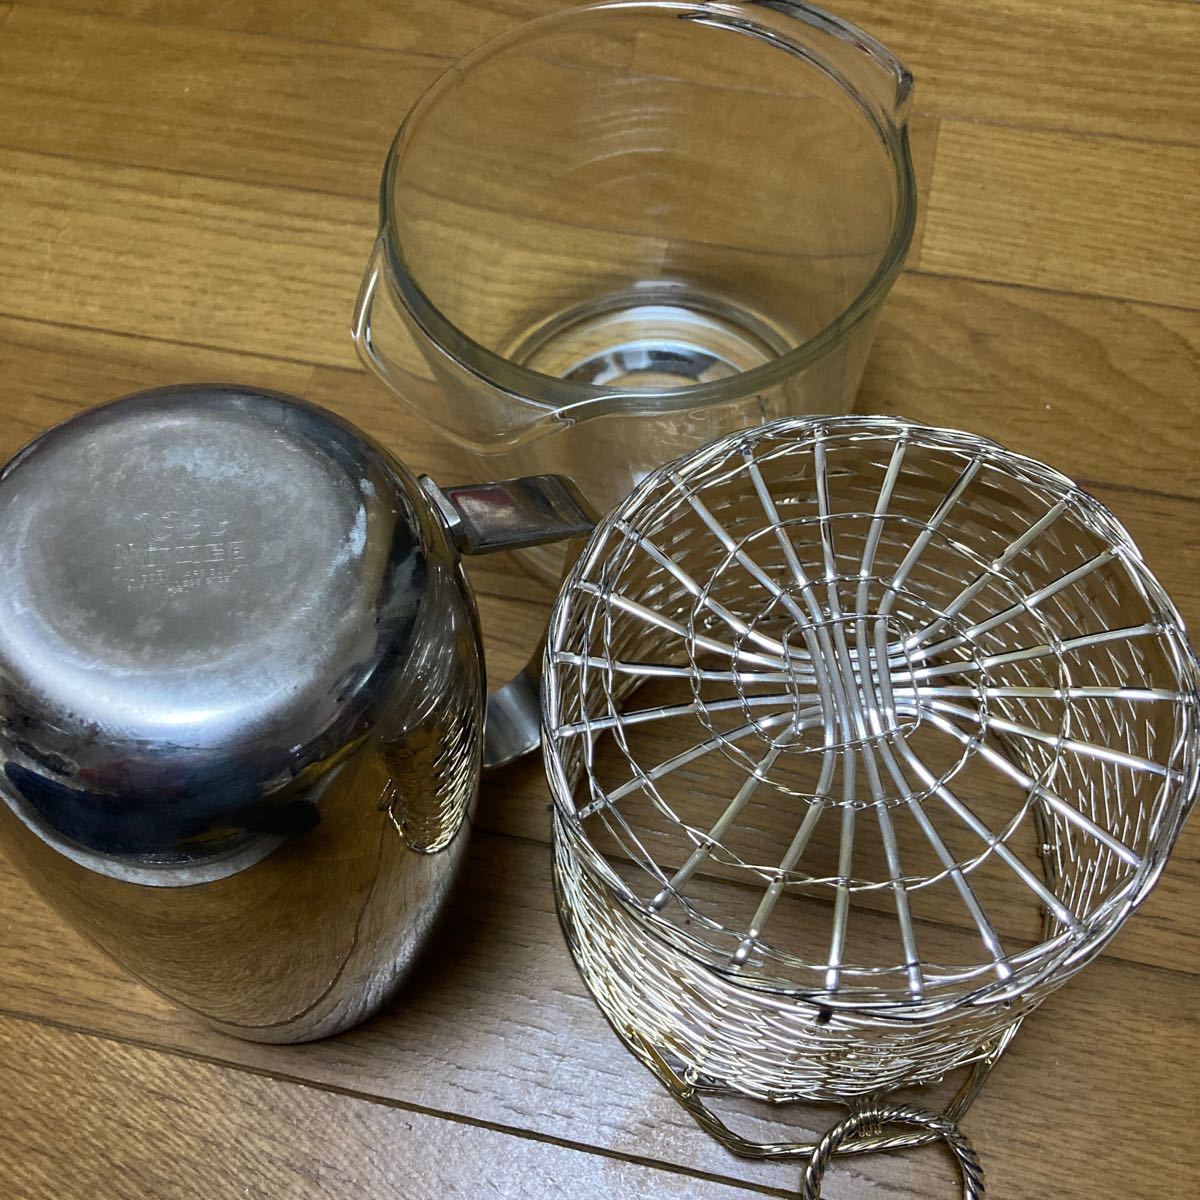  роскошный Miyazaki завод ведерко для льда щипцы вода pot / вода десятая часть комплект нержавеющая сталь MIYA COCK WARE / sake алкоголь виски лед inserting 